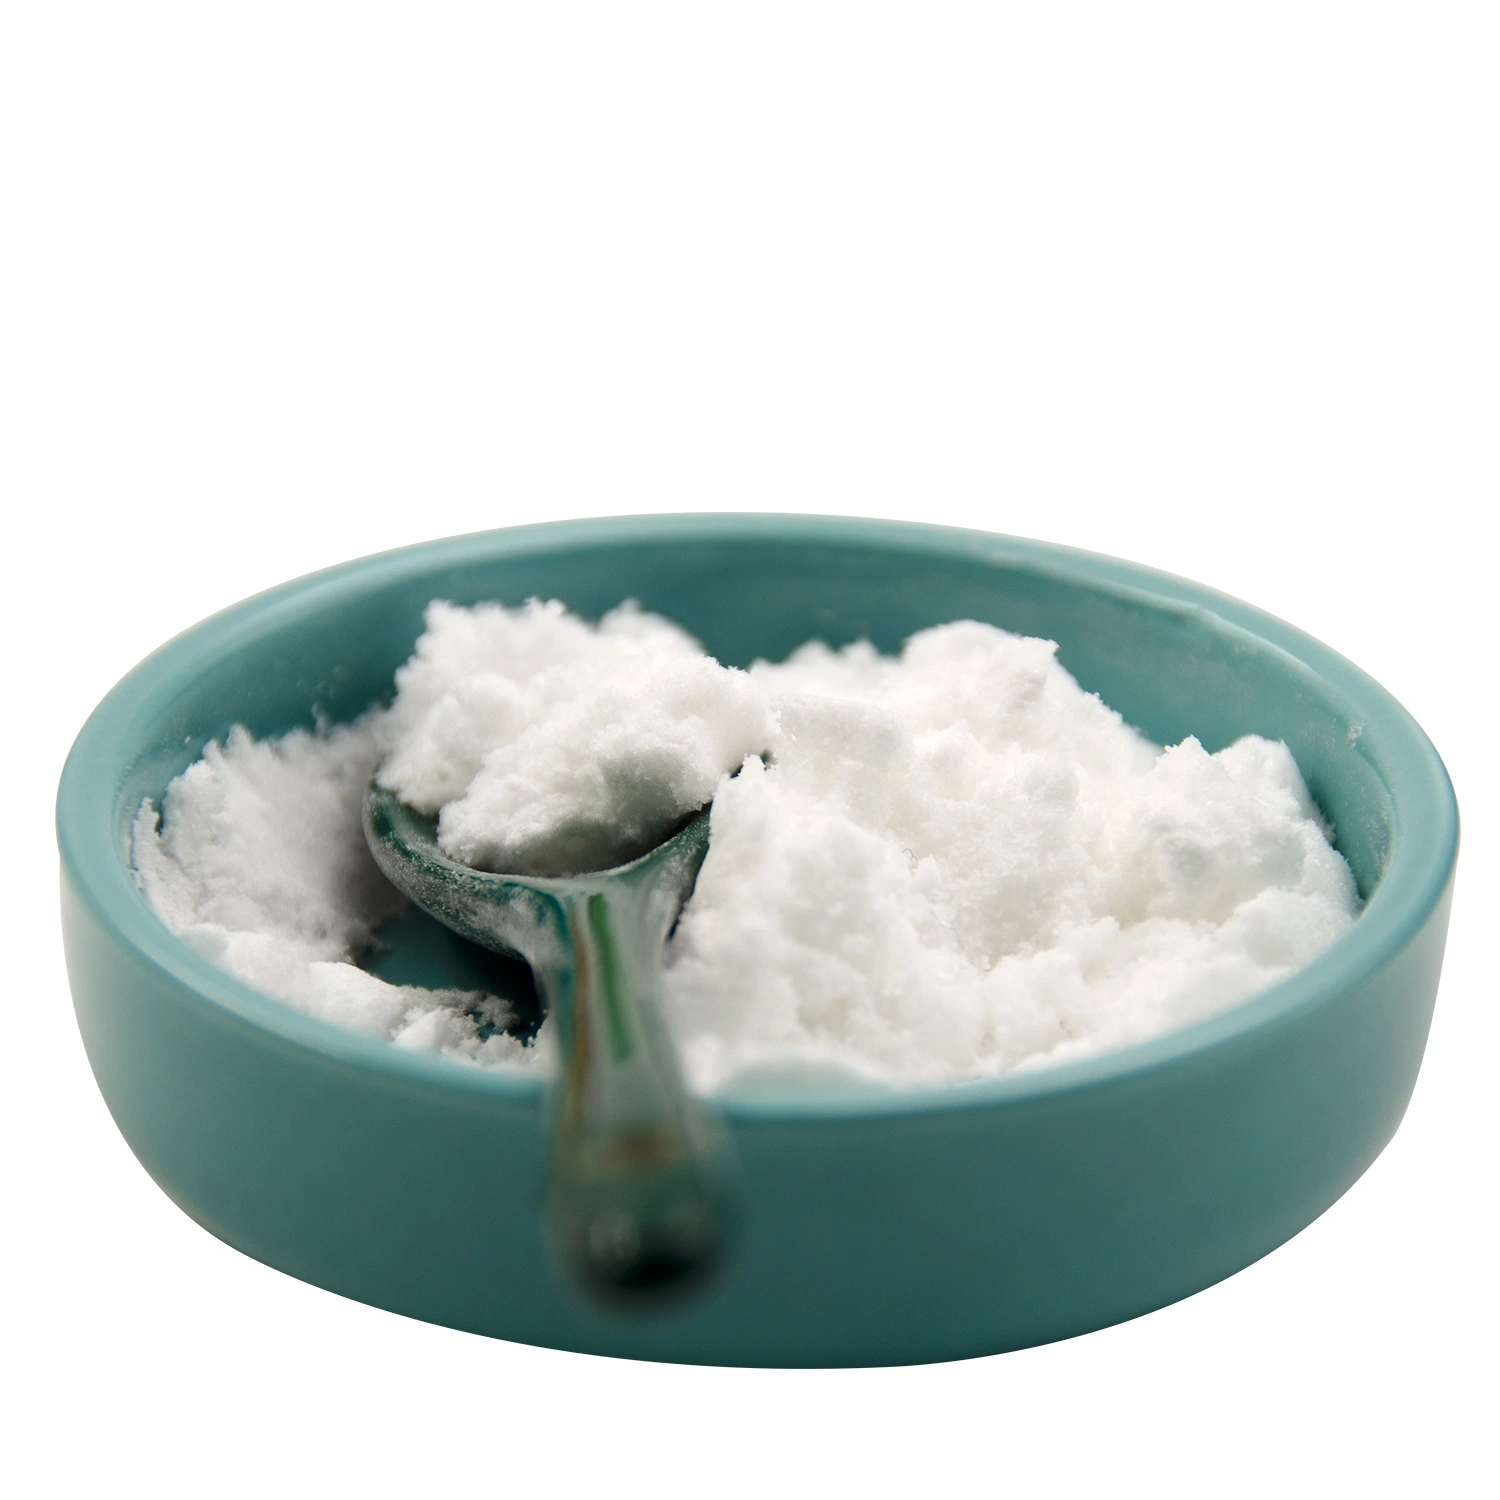 Lebensmittelzusatzstoffe Zutaten Rohmaterial CAS 107-35-7 natürliche 99% Reinheit L-Taurin-Pulver